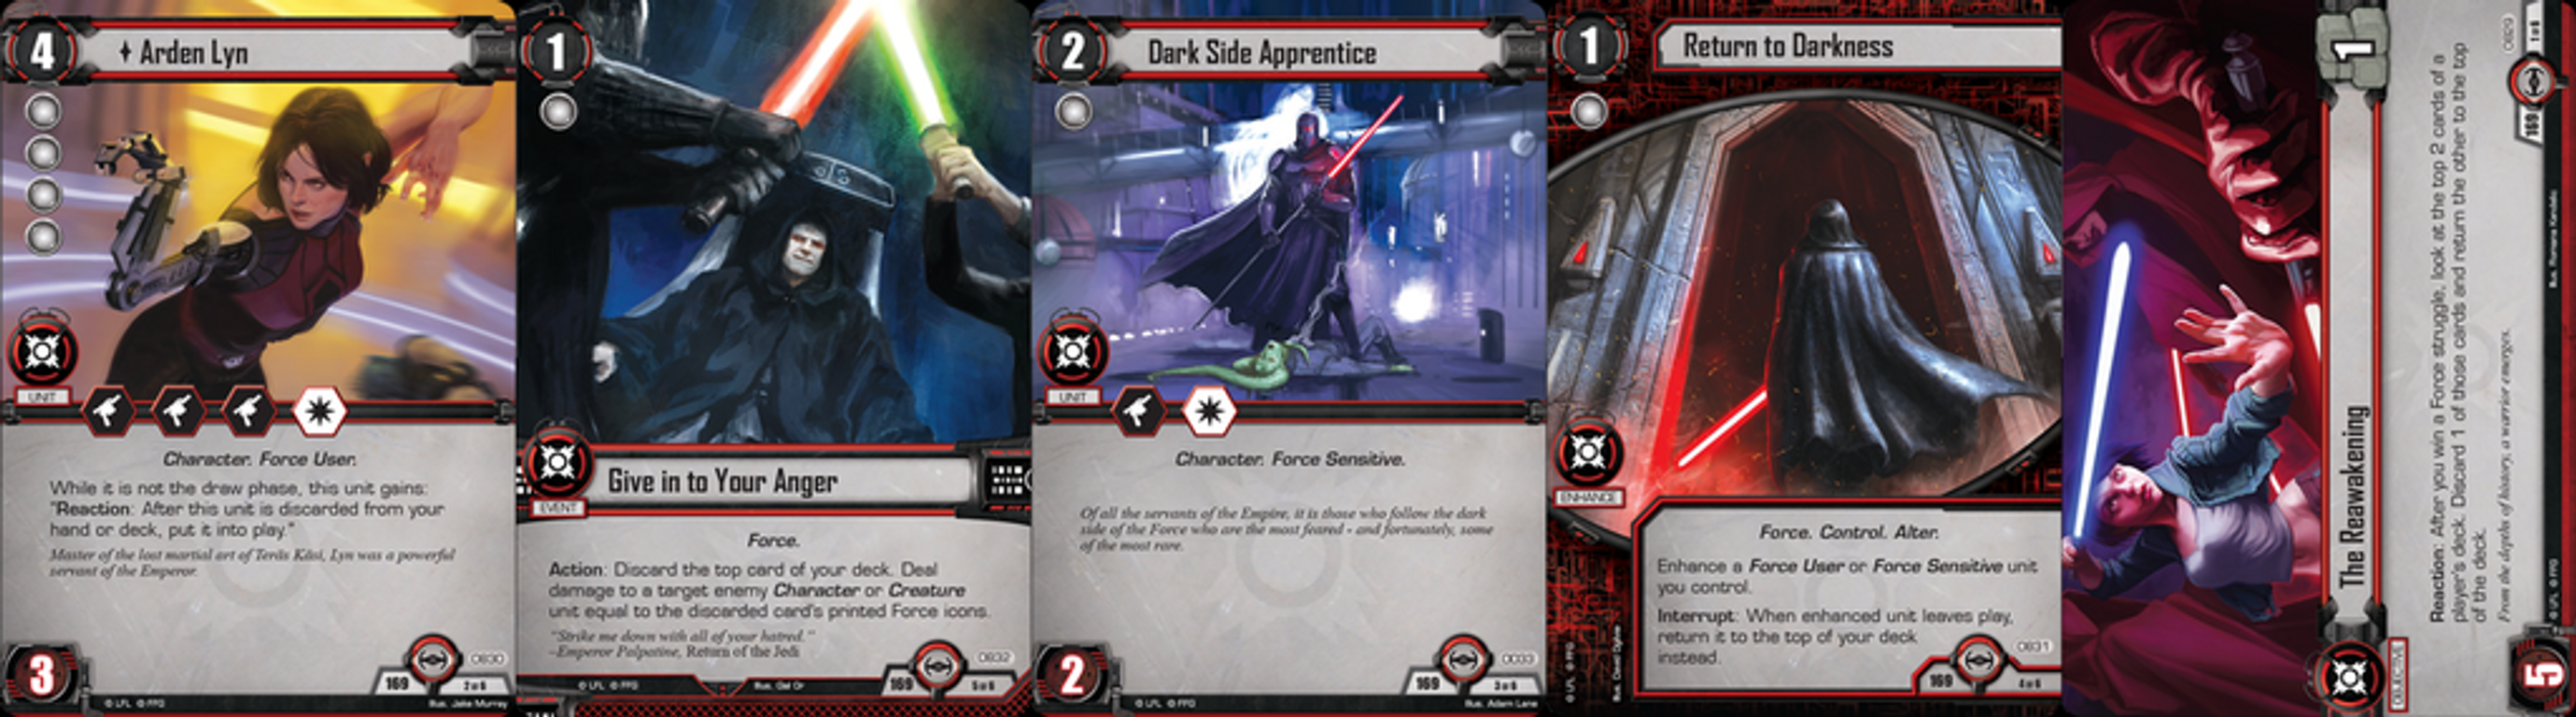 Star Wars: El Juego de Cartas - Salto al hiperespacio cartas